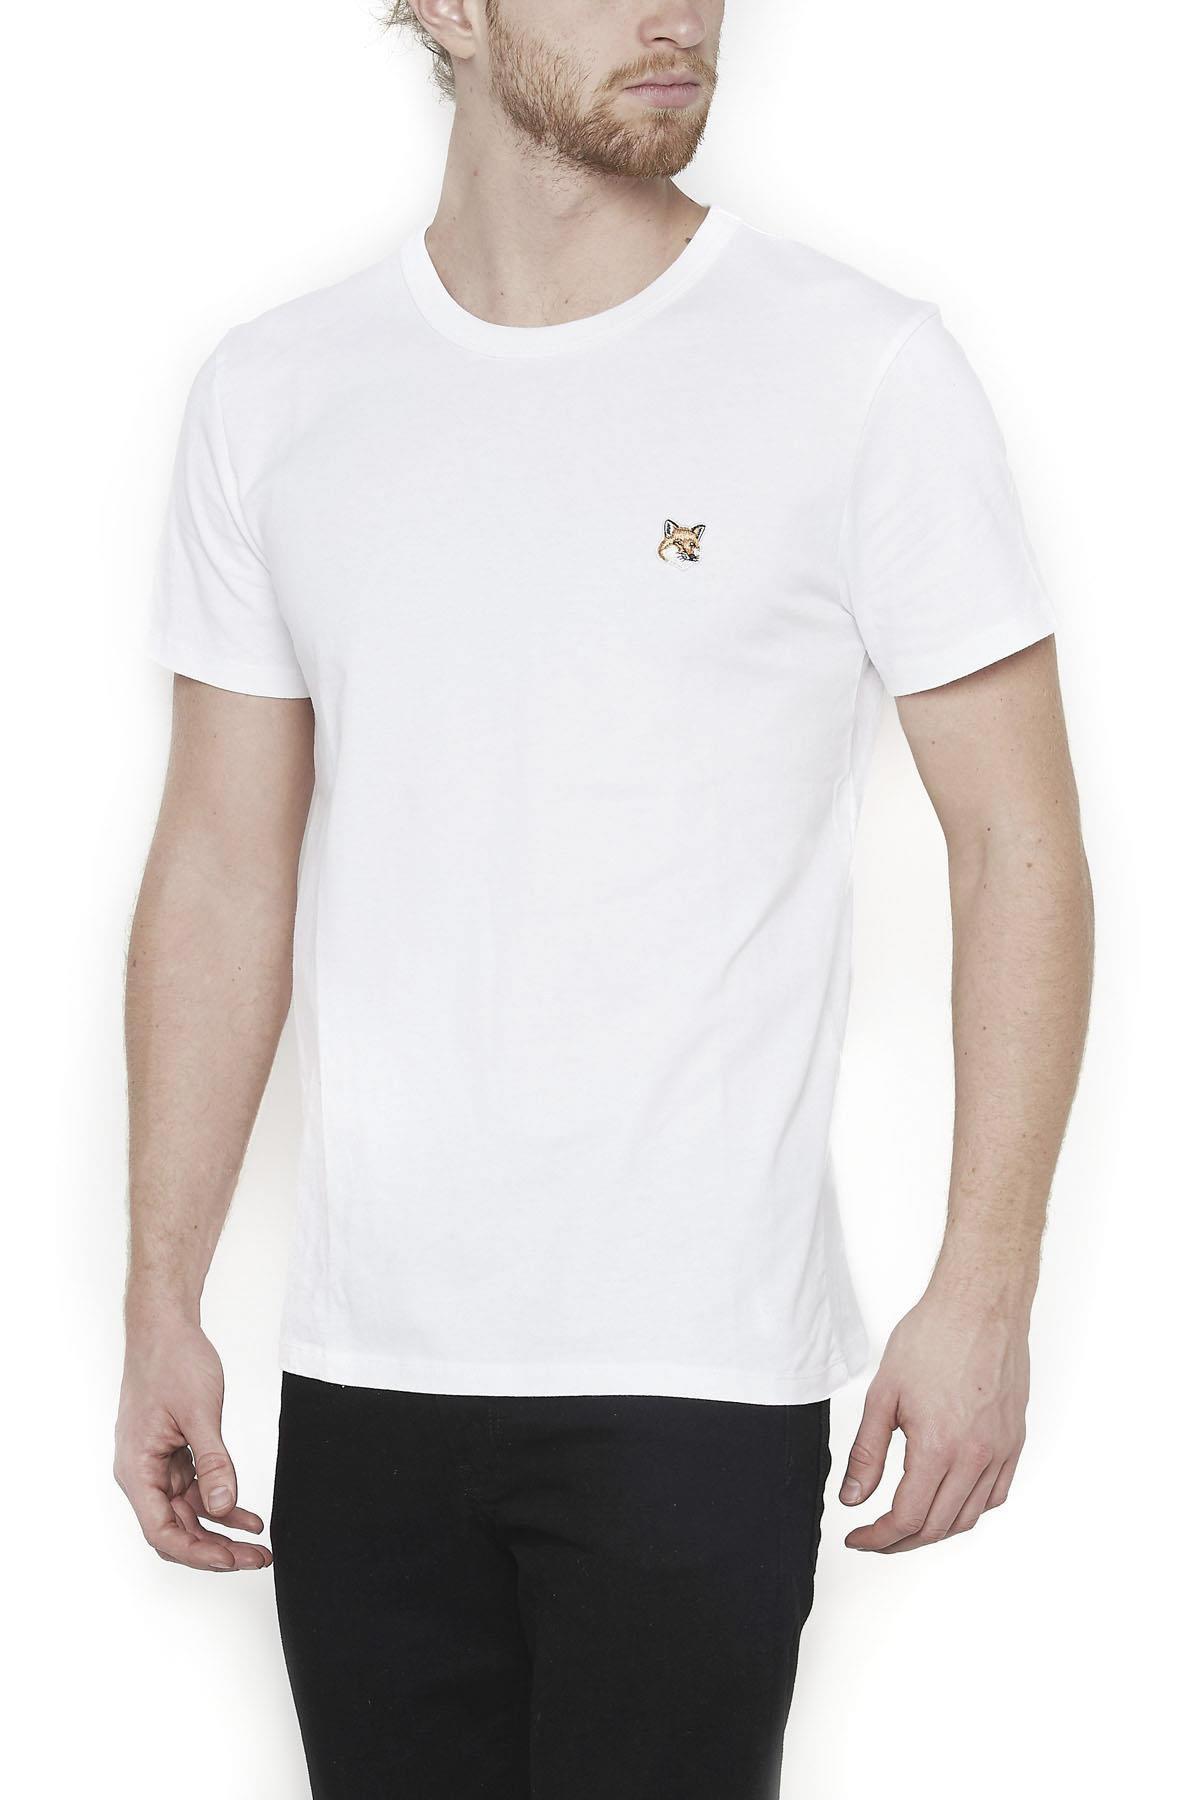 Maison Kitsuné Logo T-shirt in White for Men - Lyst